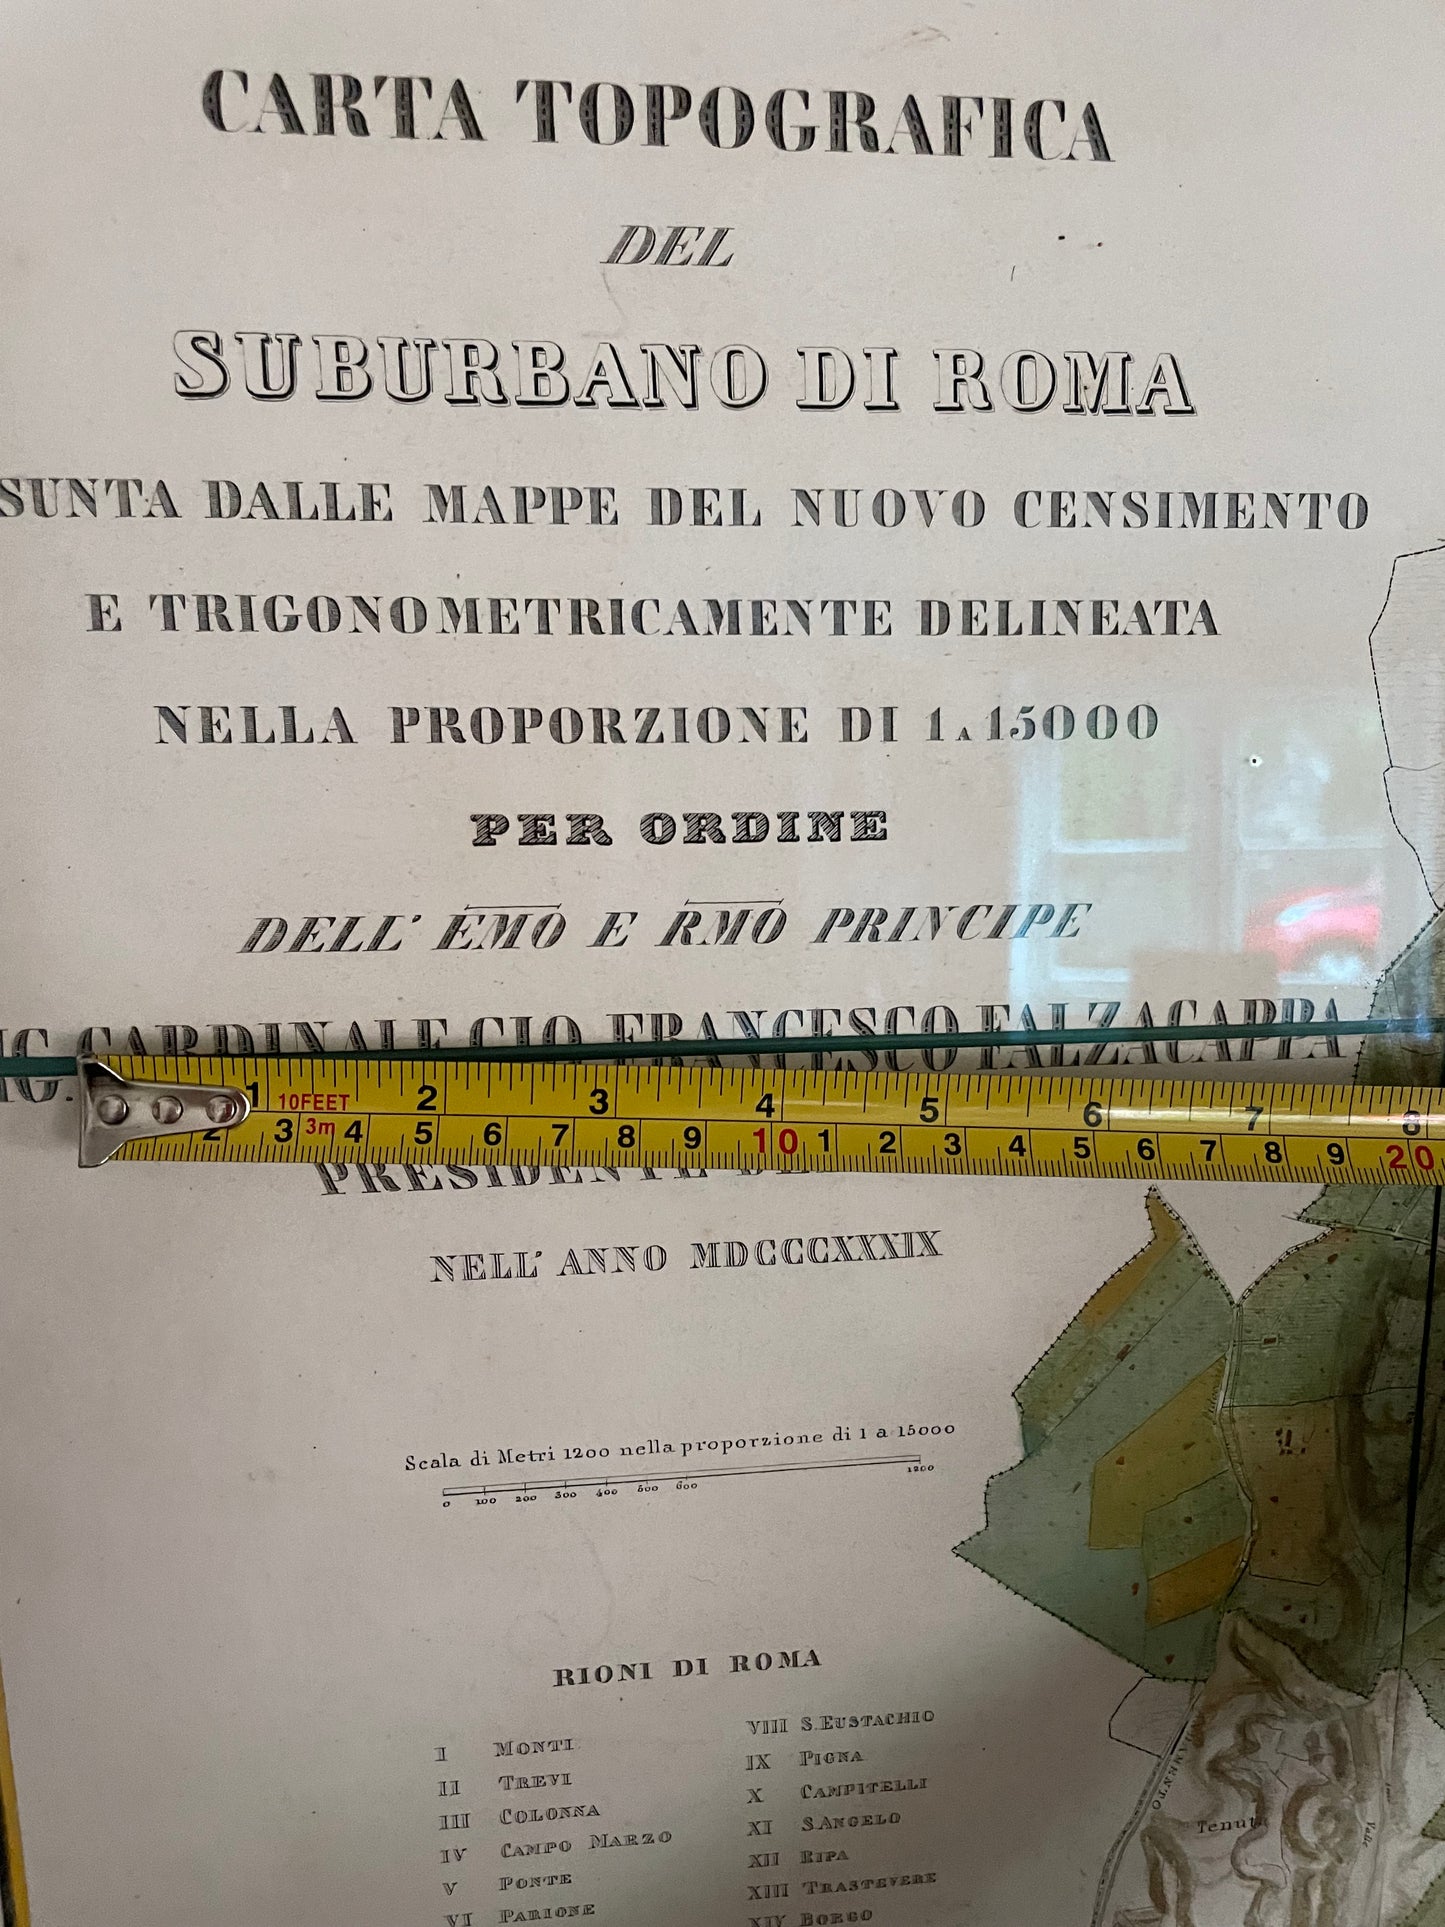 Map Of Rome Carta Topografica del Suburbano di Romai, 1839 (Topographic map of Rome and its surroundings in 1839)